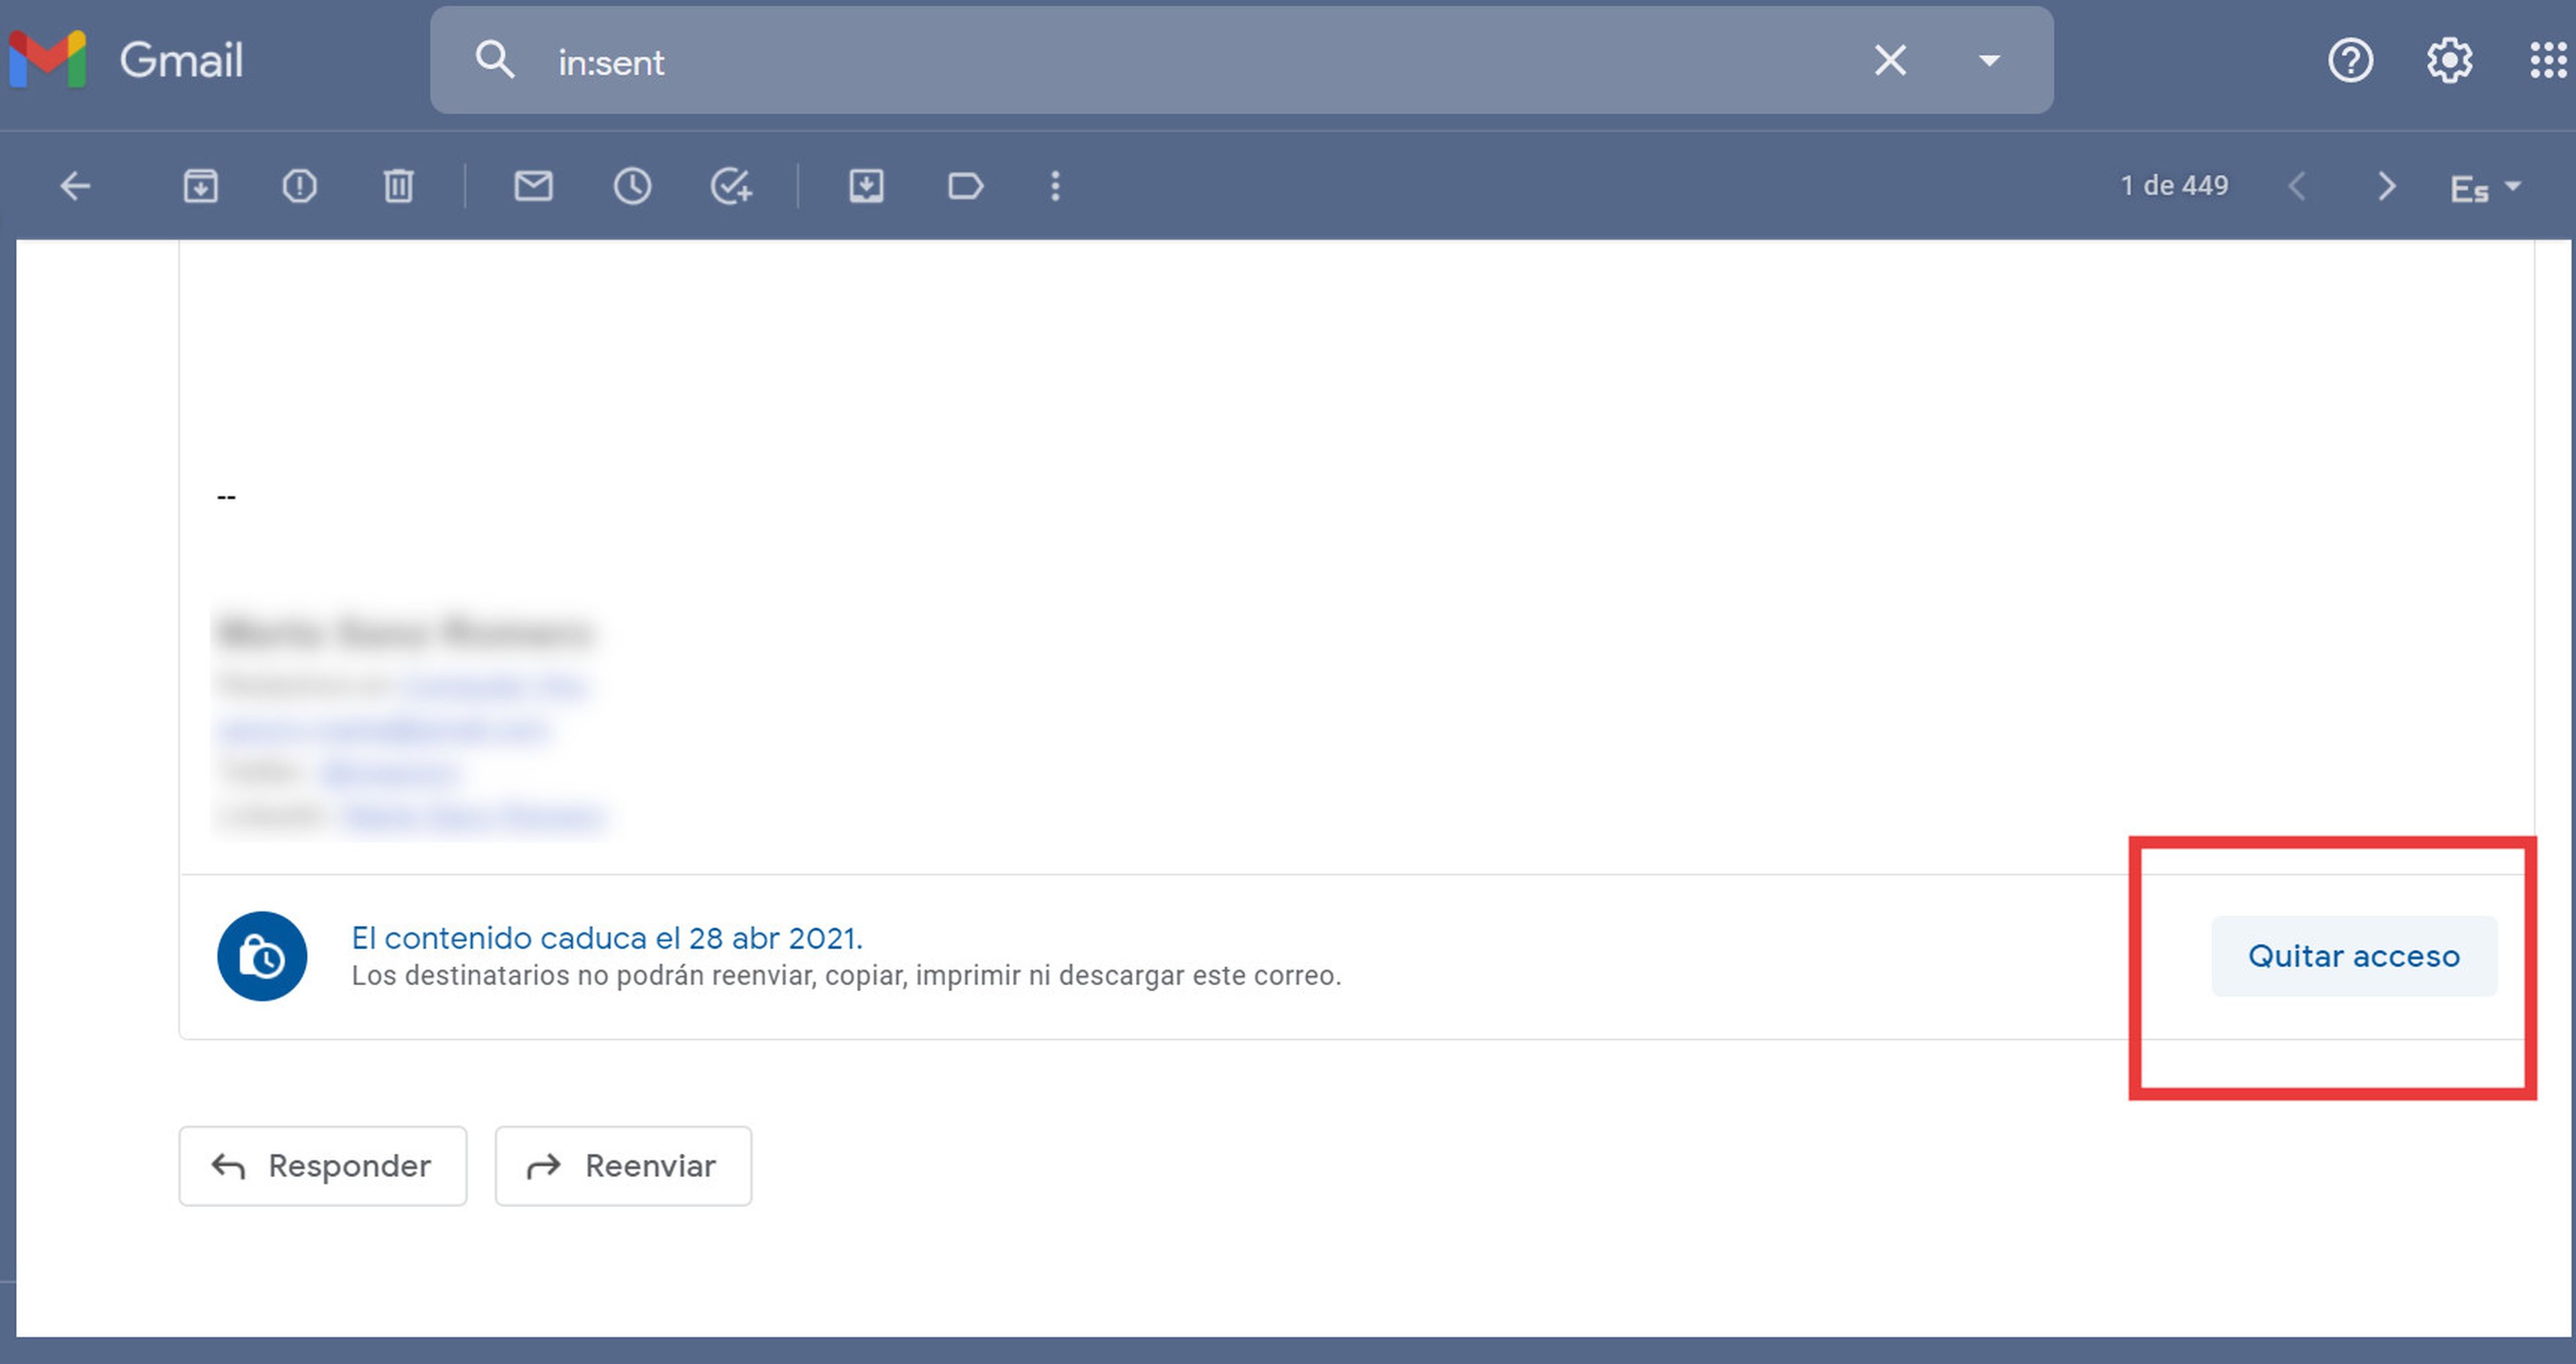 Gmail correo confidencial tutorial